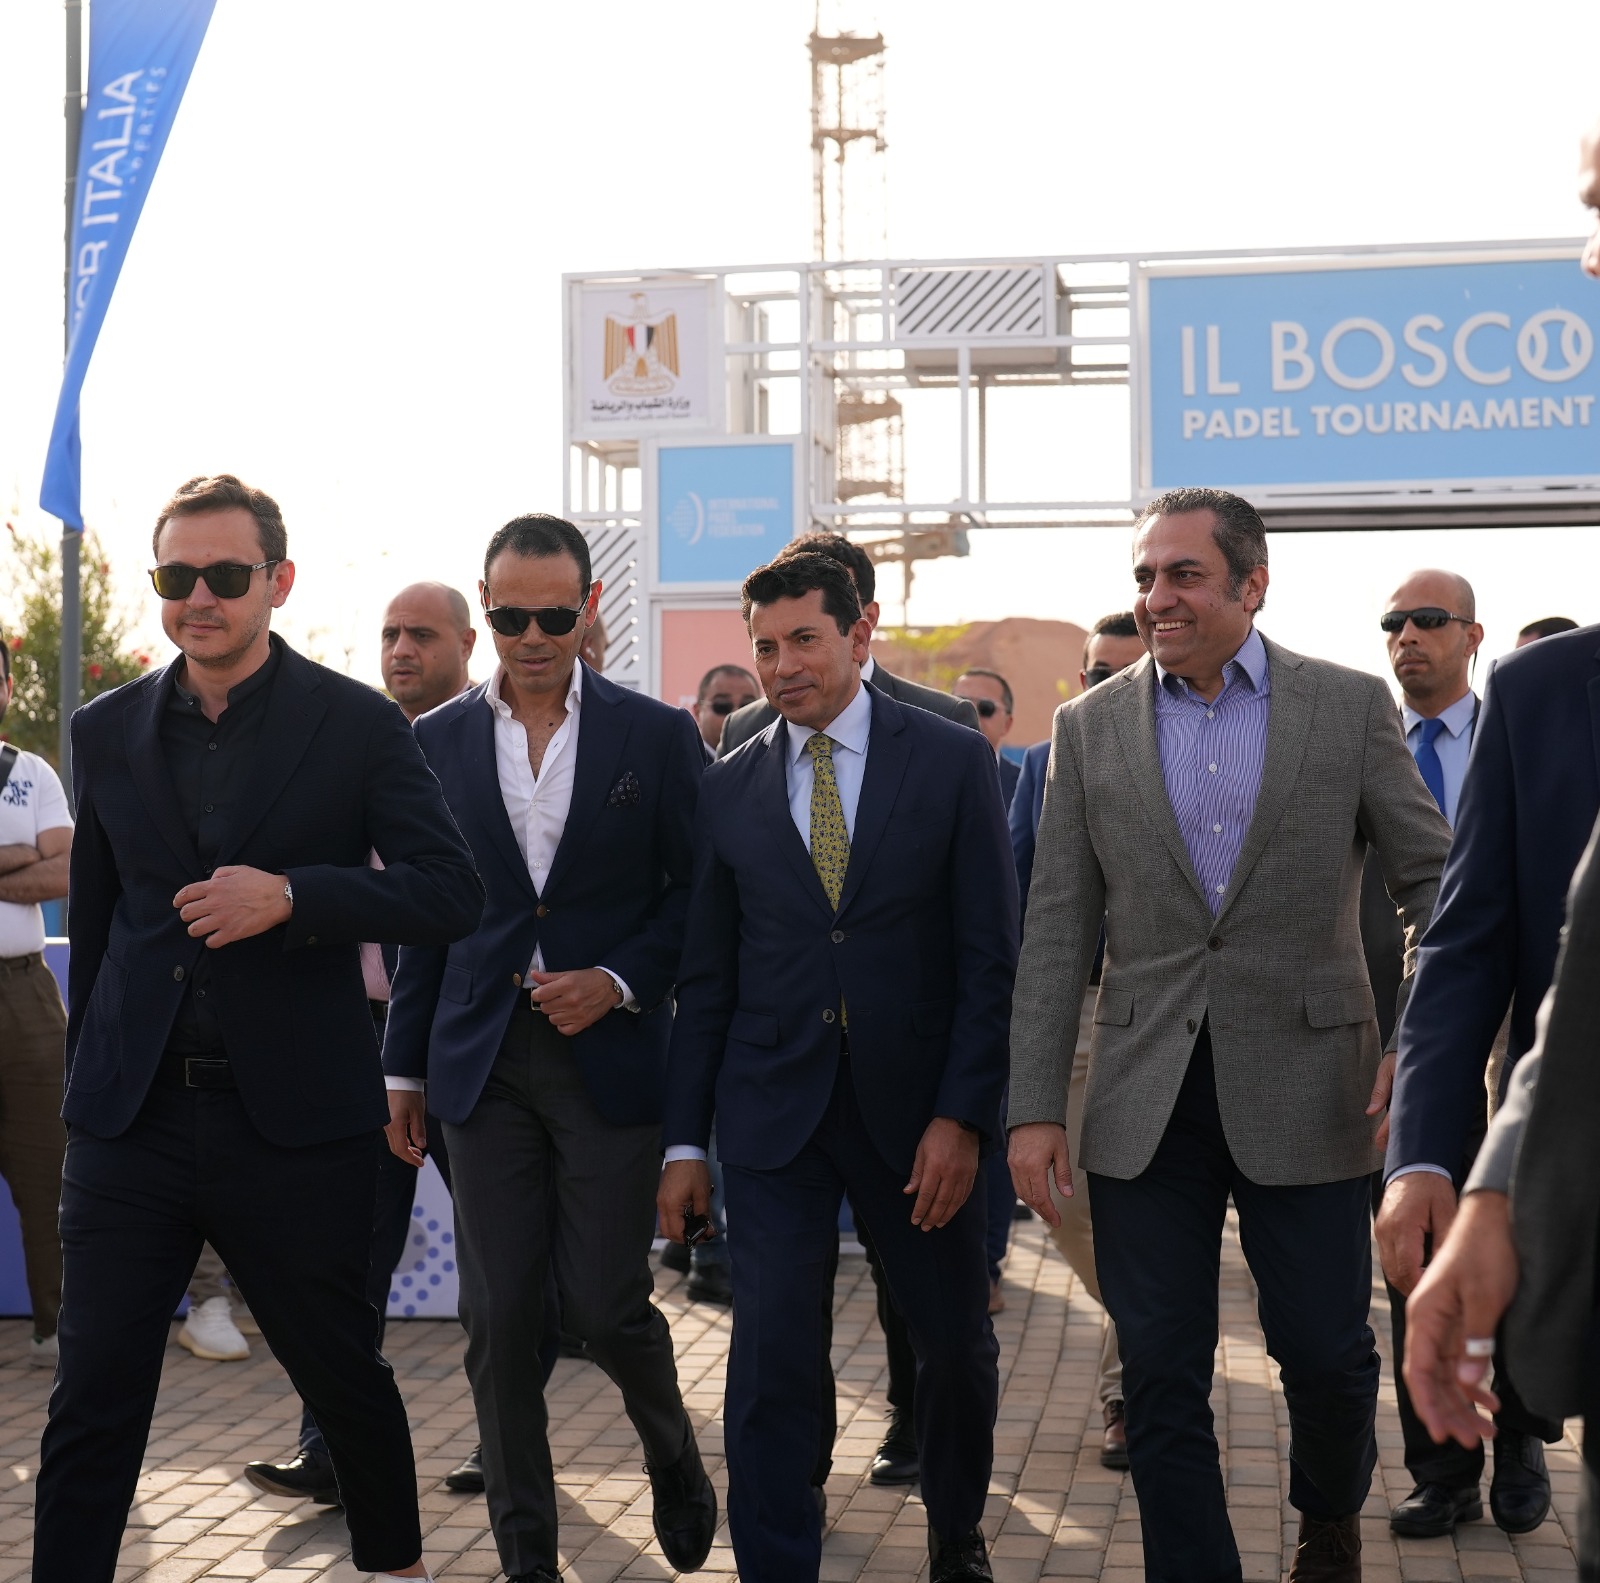 مصر إيطاليا العقارية تعلن انطلاق بطولة البوسكو الدولية الثانية للبادل في العاصمة الإدارية